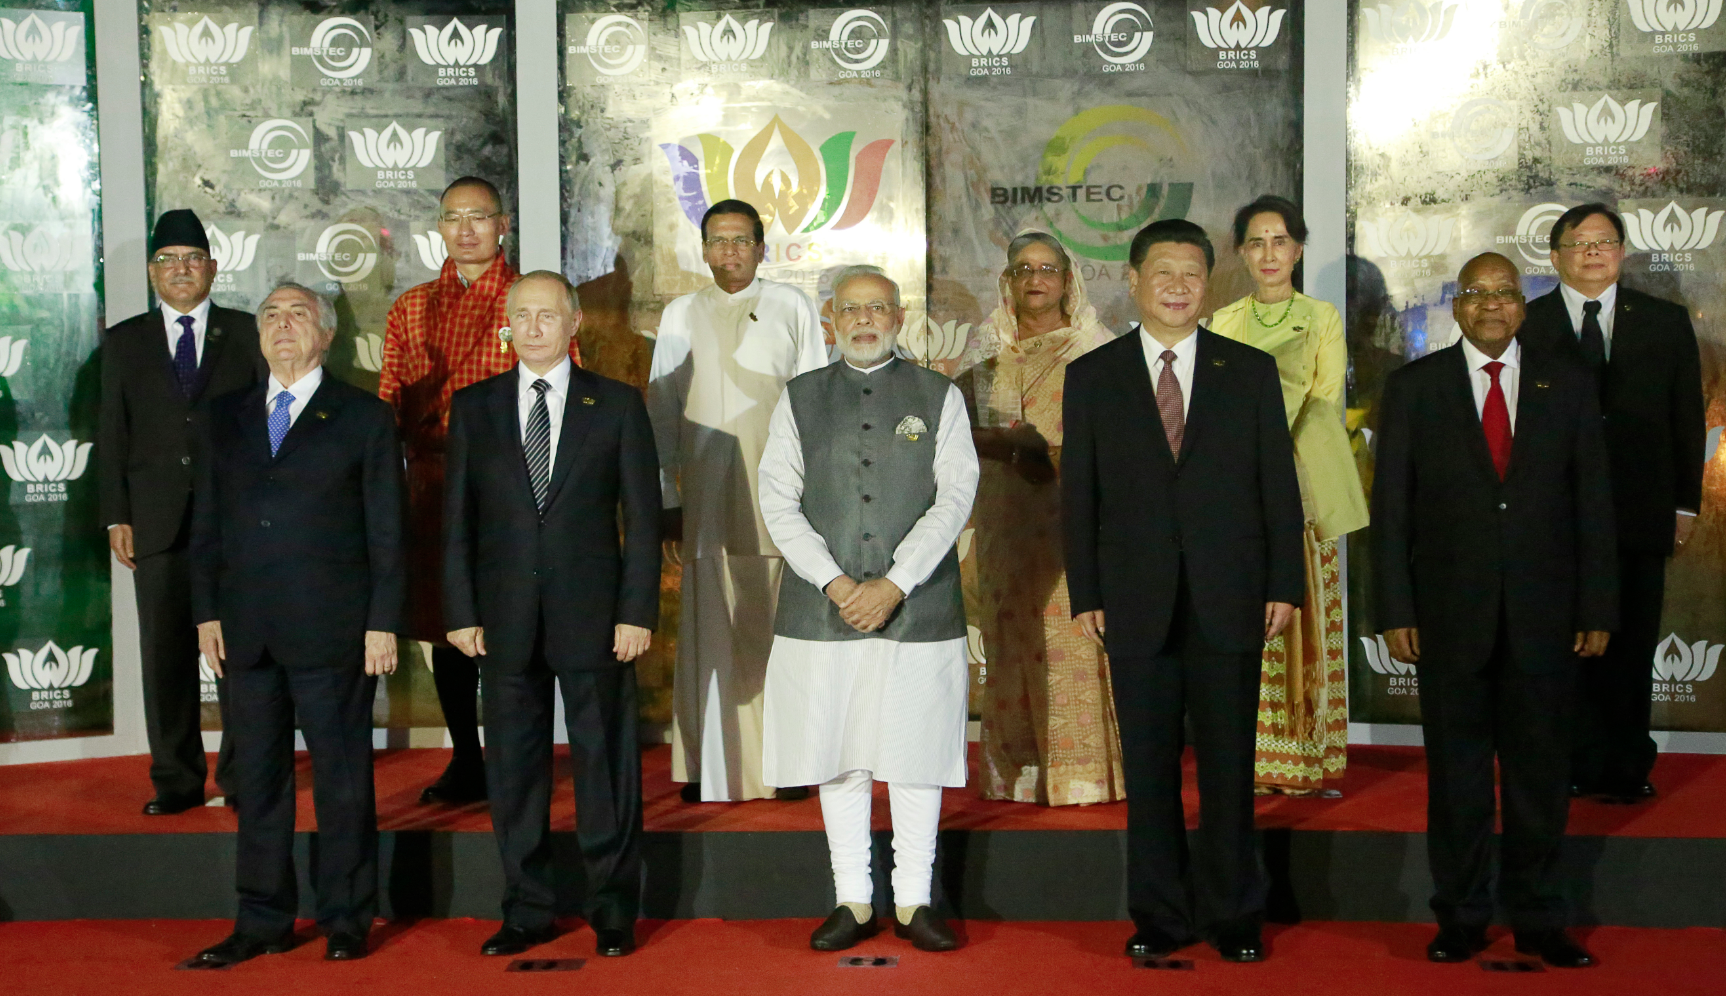 지난 10월 15-16일 브릭스 국가(BRICS, 브라질, 러시아, 인도, 중국, 남아프리카공화국) 정상회의가 열렸다.